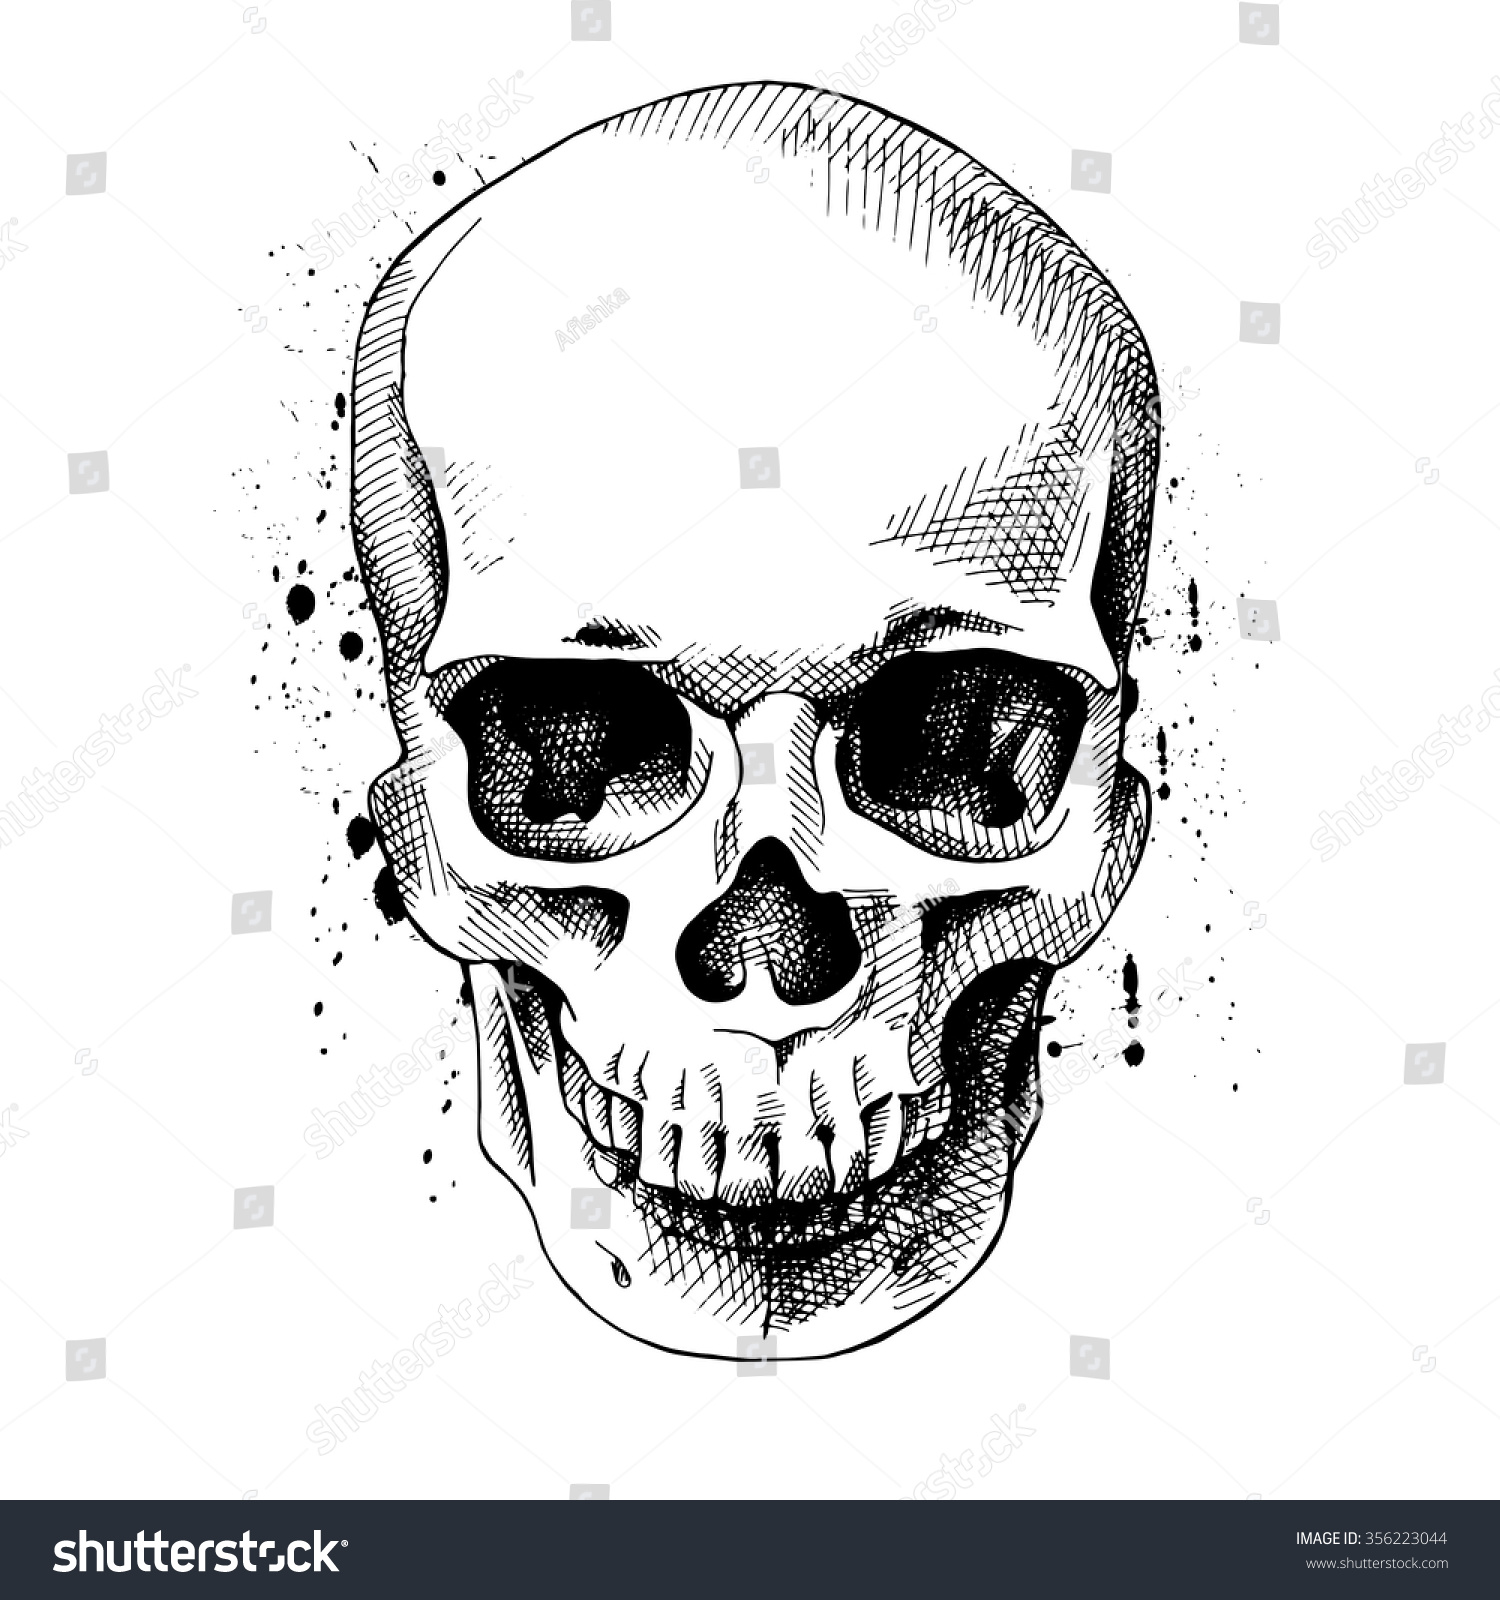 Image Skull Vector Illustration Stock Vector 356223044 - Shutterstock